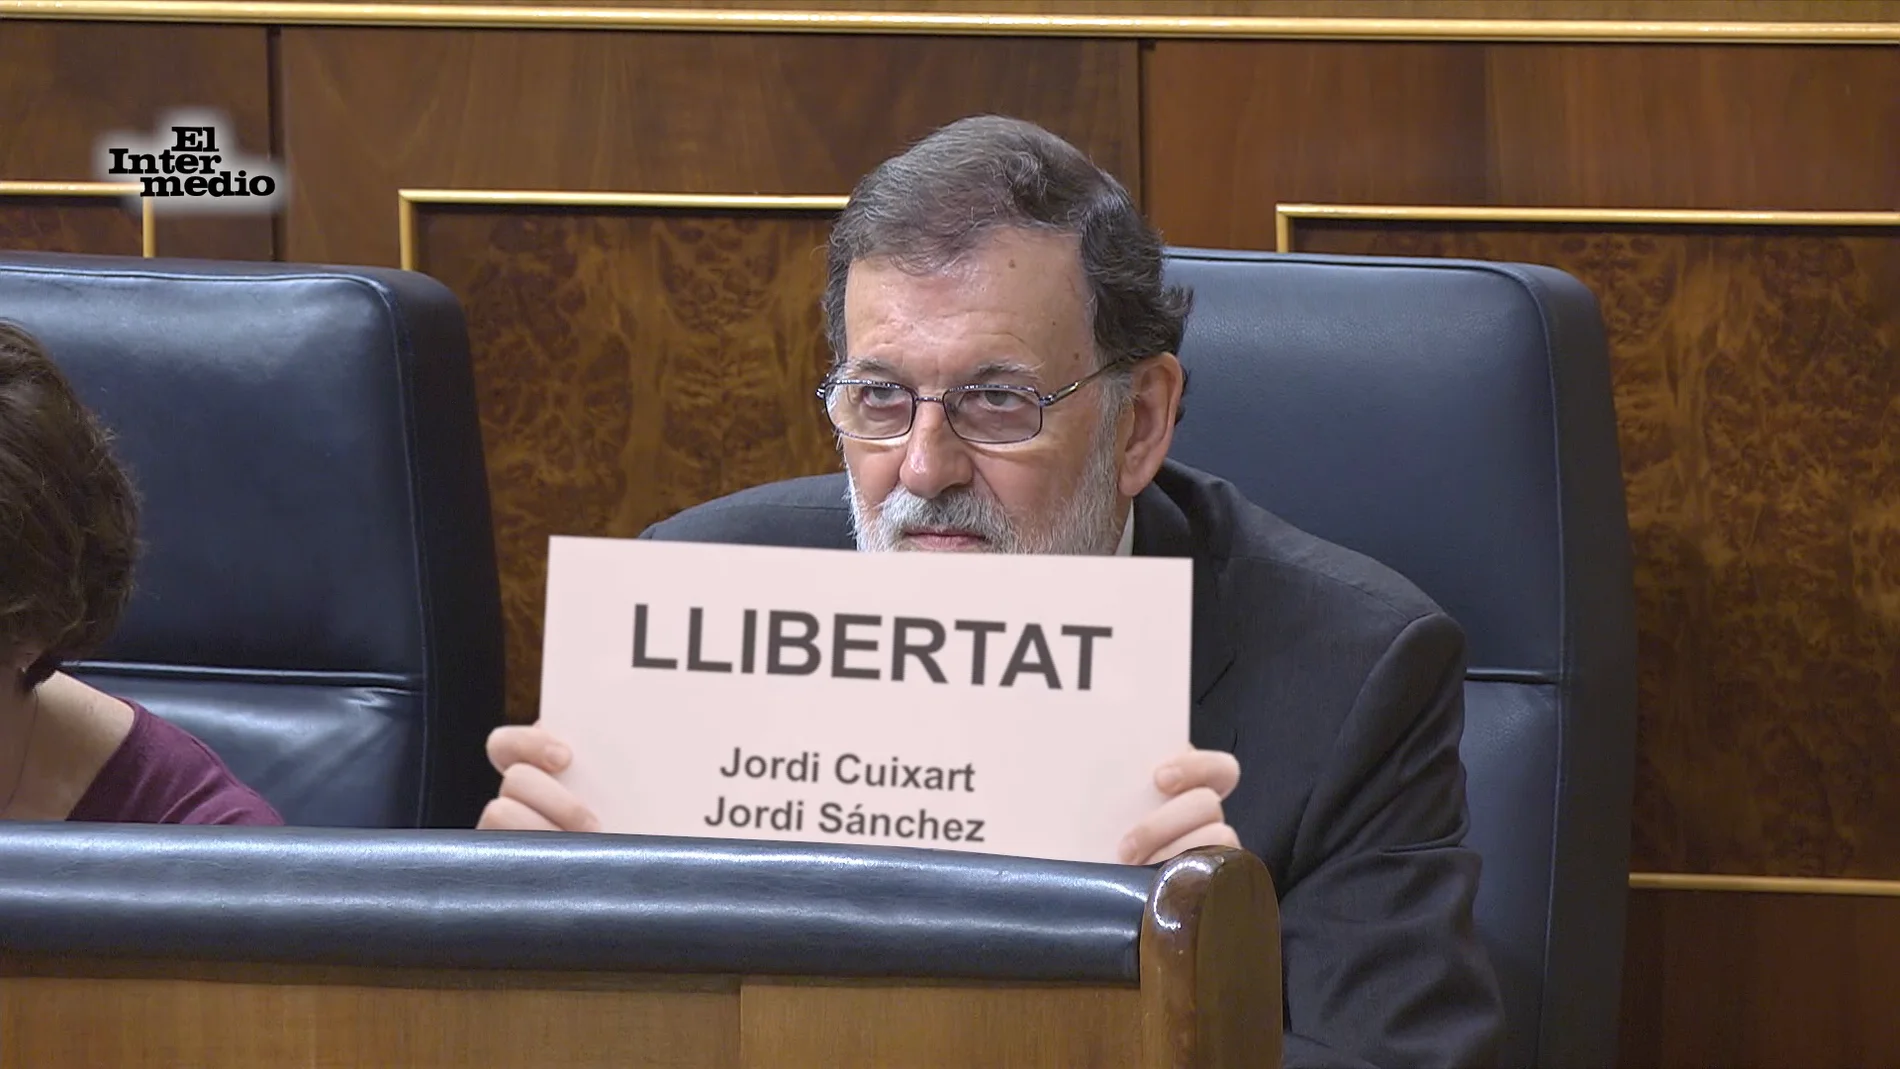 Mariano Rajoy pide sorprendentemente "libertat" para los catalanes Jordi Cuixart y Sánchez